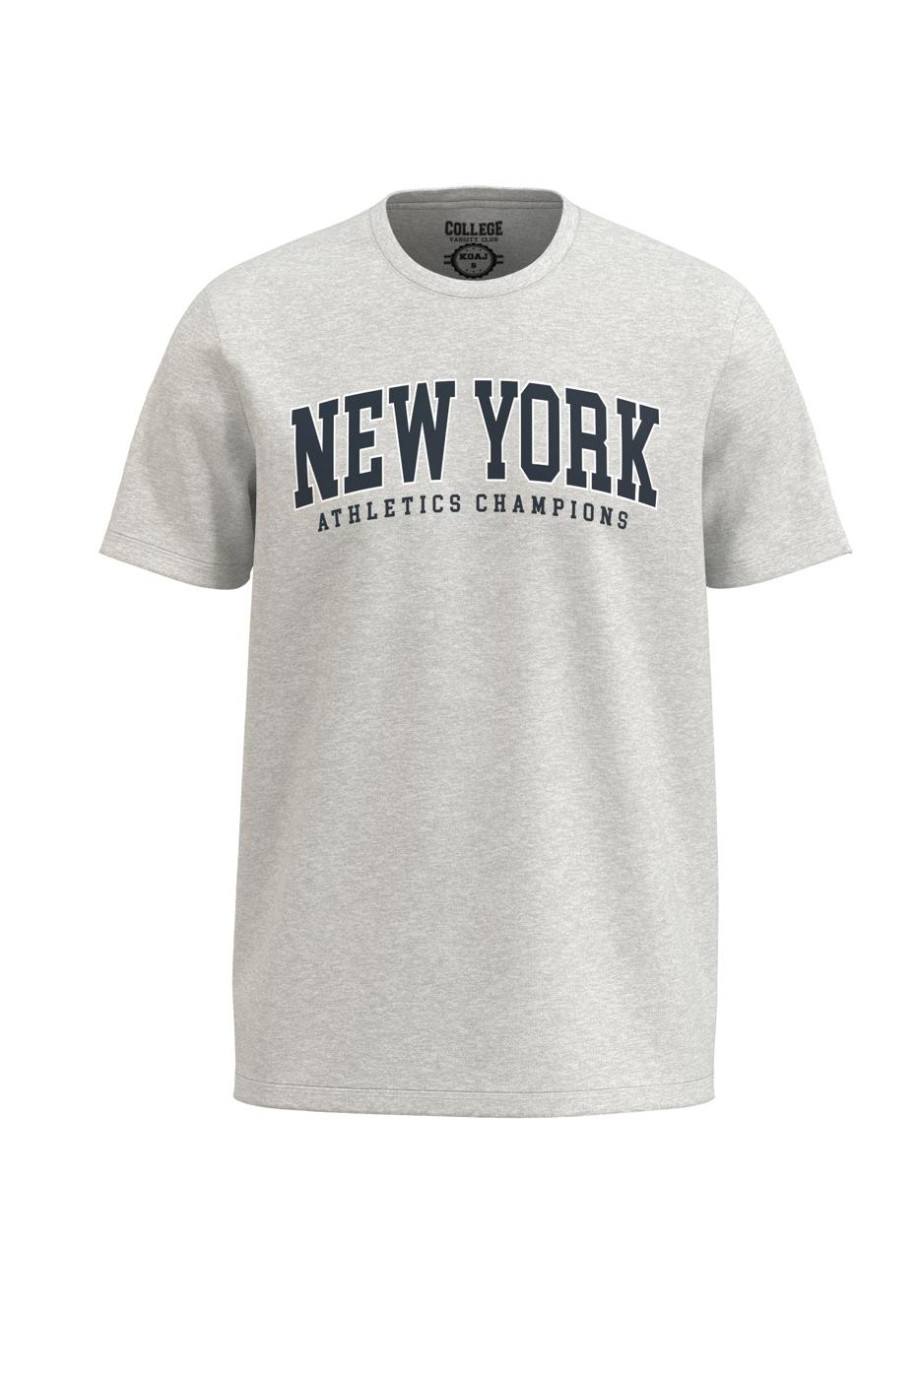 Camiseta unicolor con diseño college de New York y cuello redondo